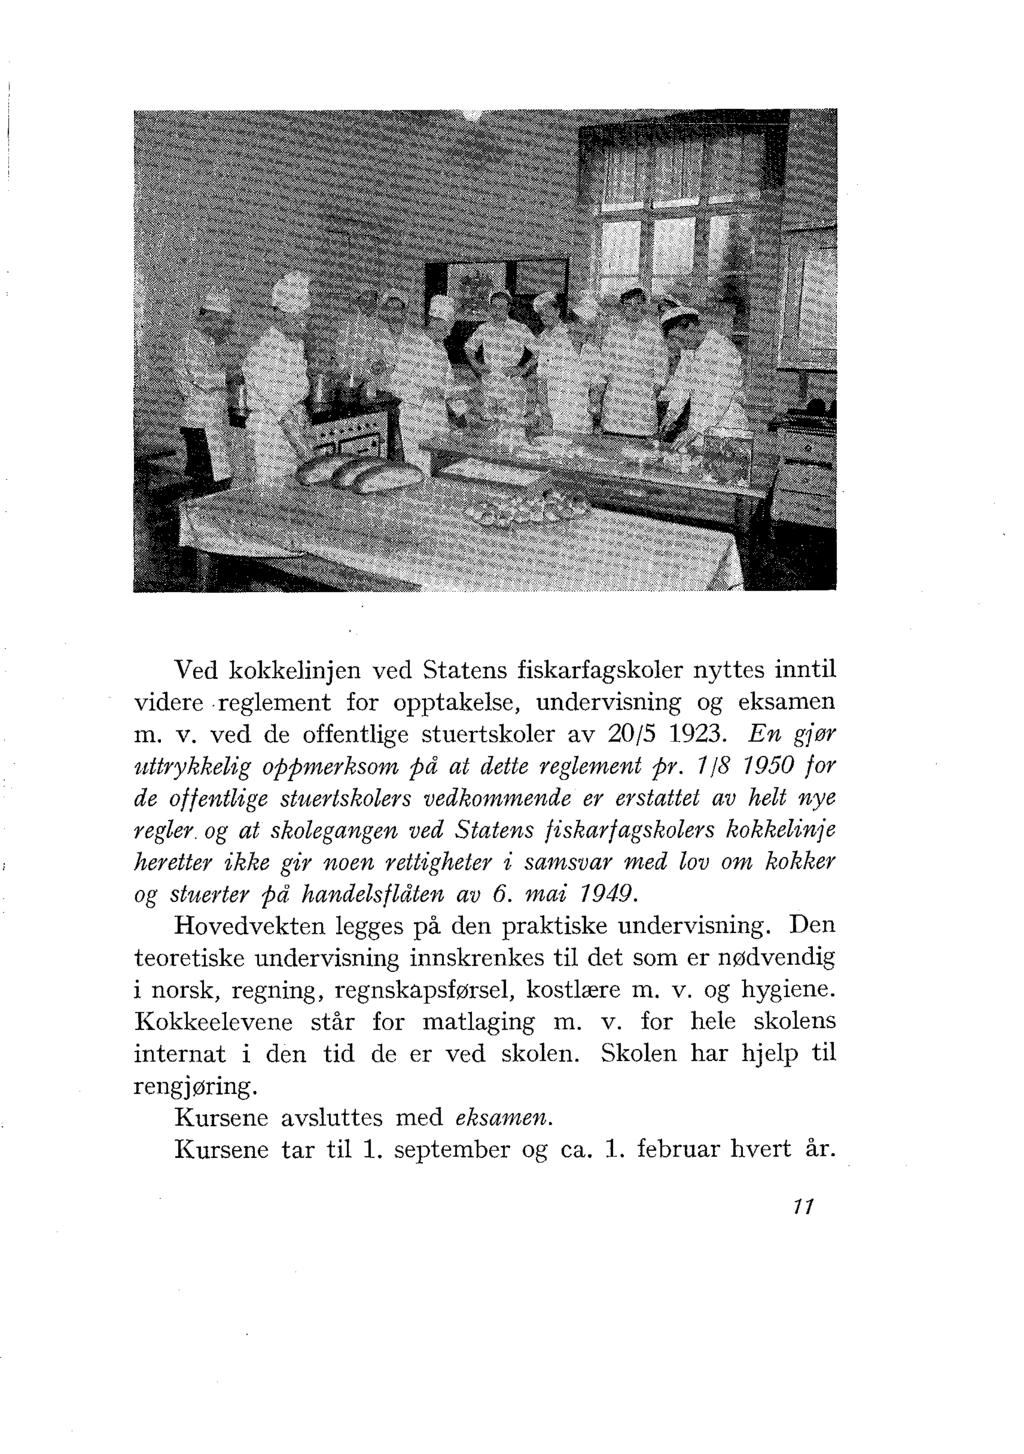 Ved kokkelinjen ved Statens fiskarfagskoler nyttes inntil videre reglement for opptakelse, undervisning og eksamen m. v. ved de offentlige stuertskoler av 201.5 1923.